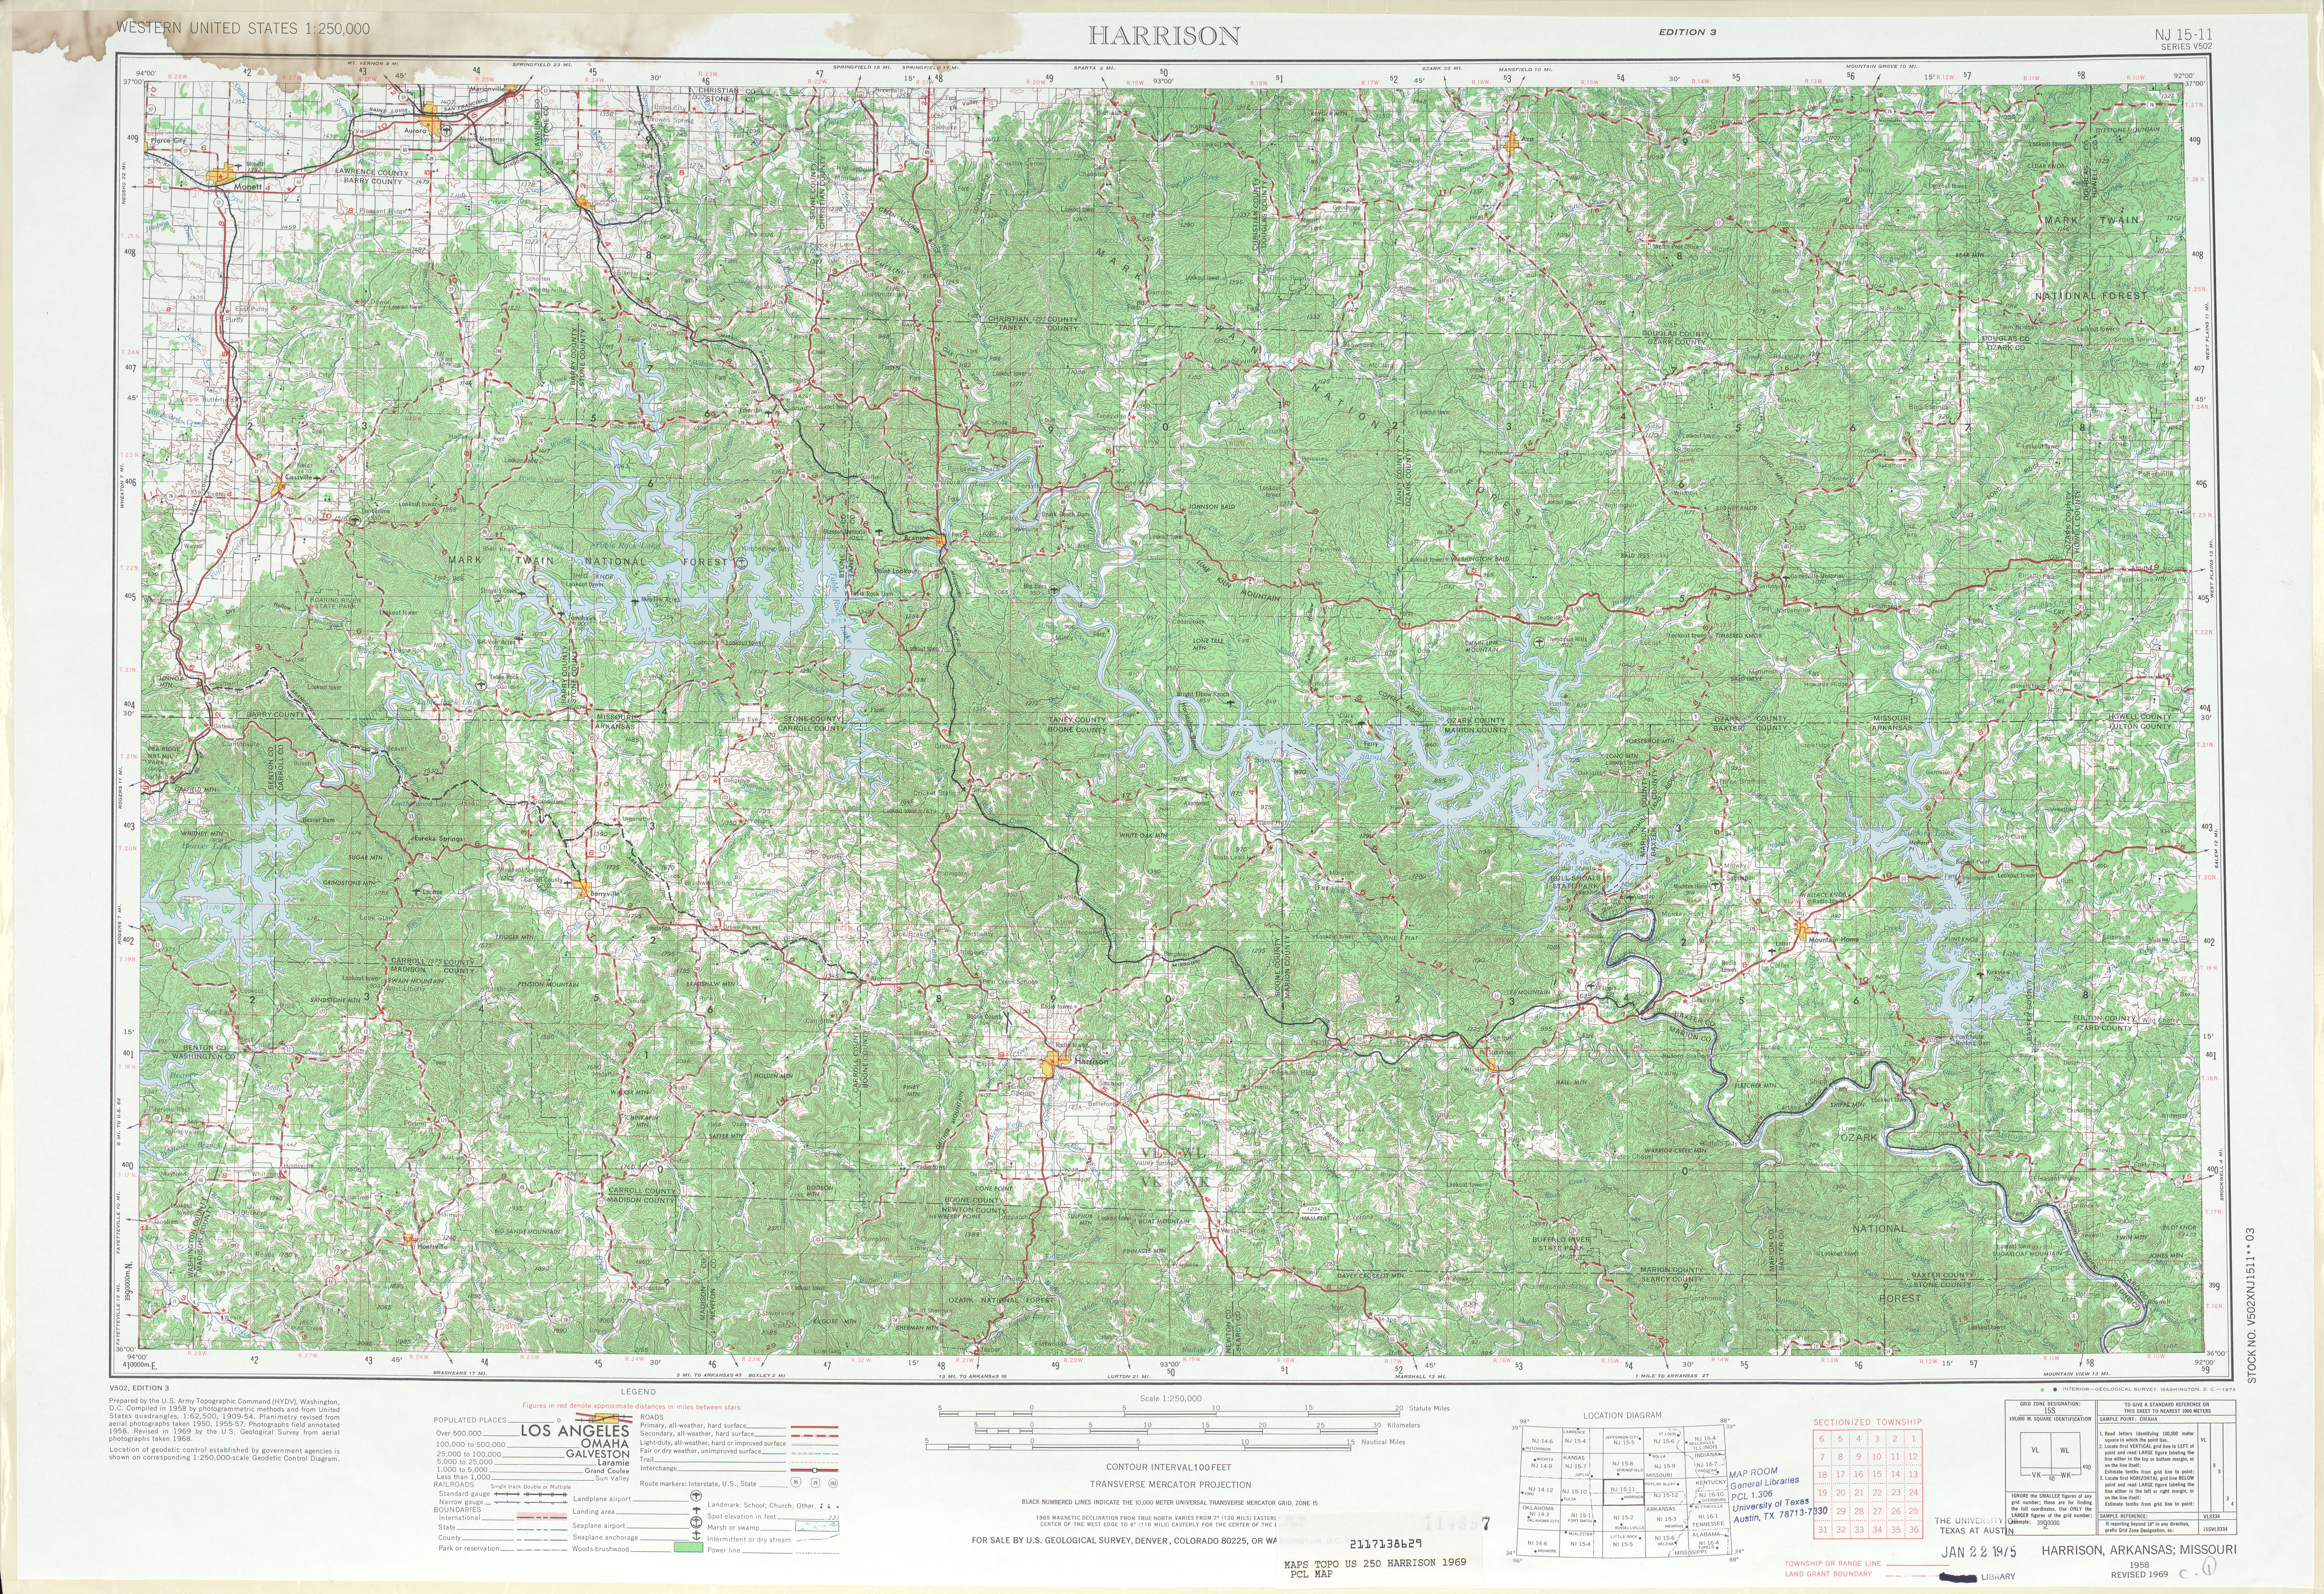 Hoja Harrison del Mapa Topográfico de los Estados Unidos 1969